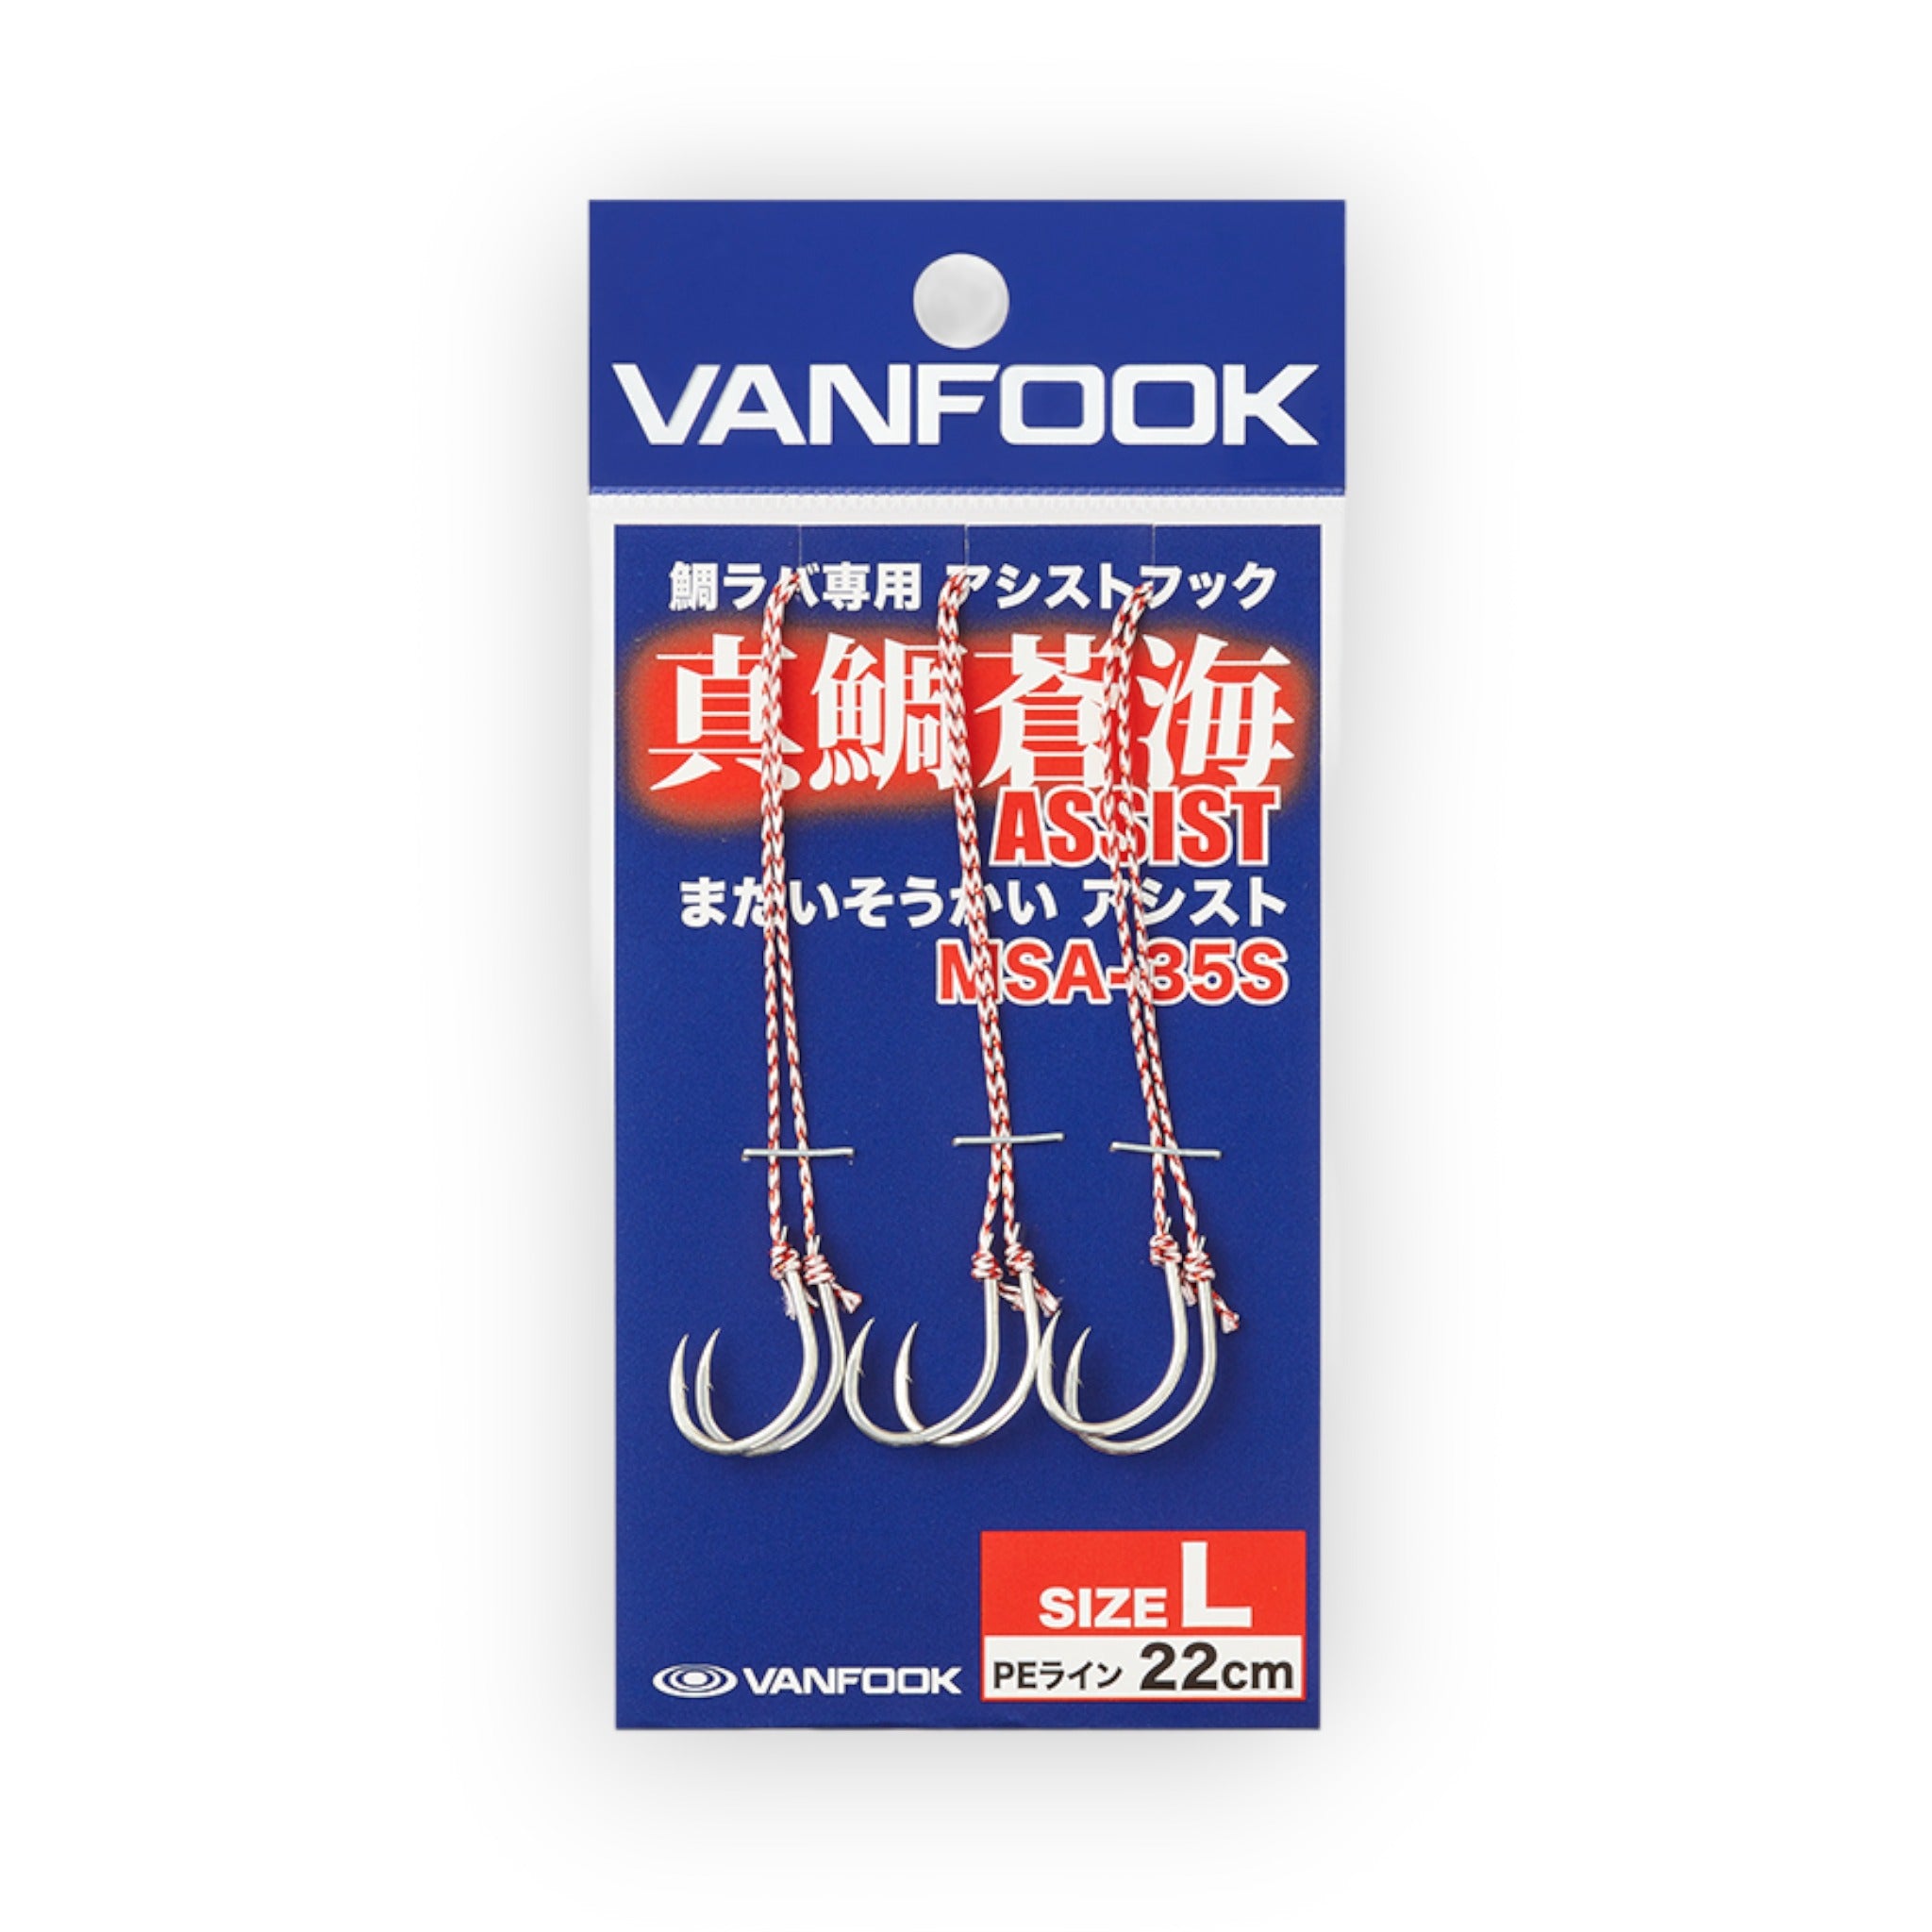 Vanfook MSA-35 Tai rubber assist hook – BigGame